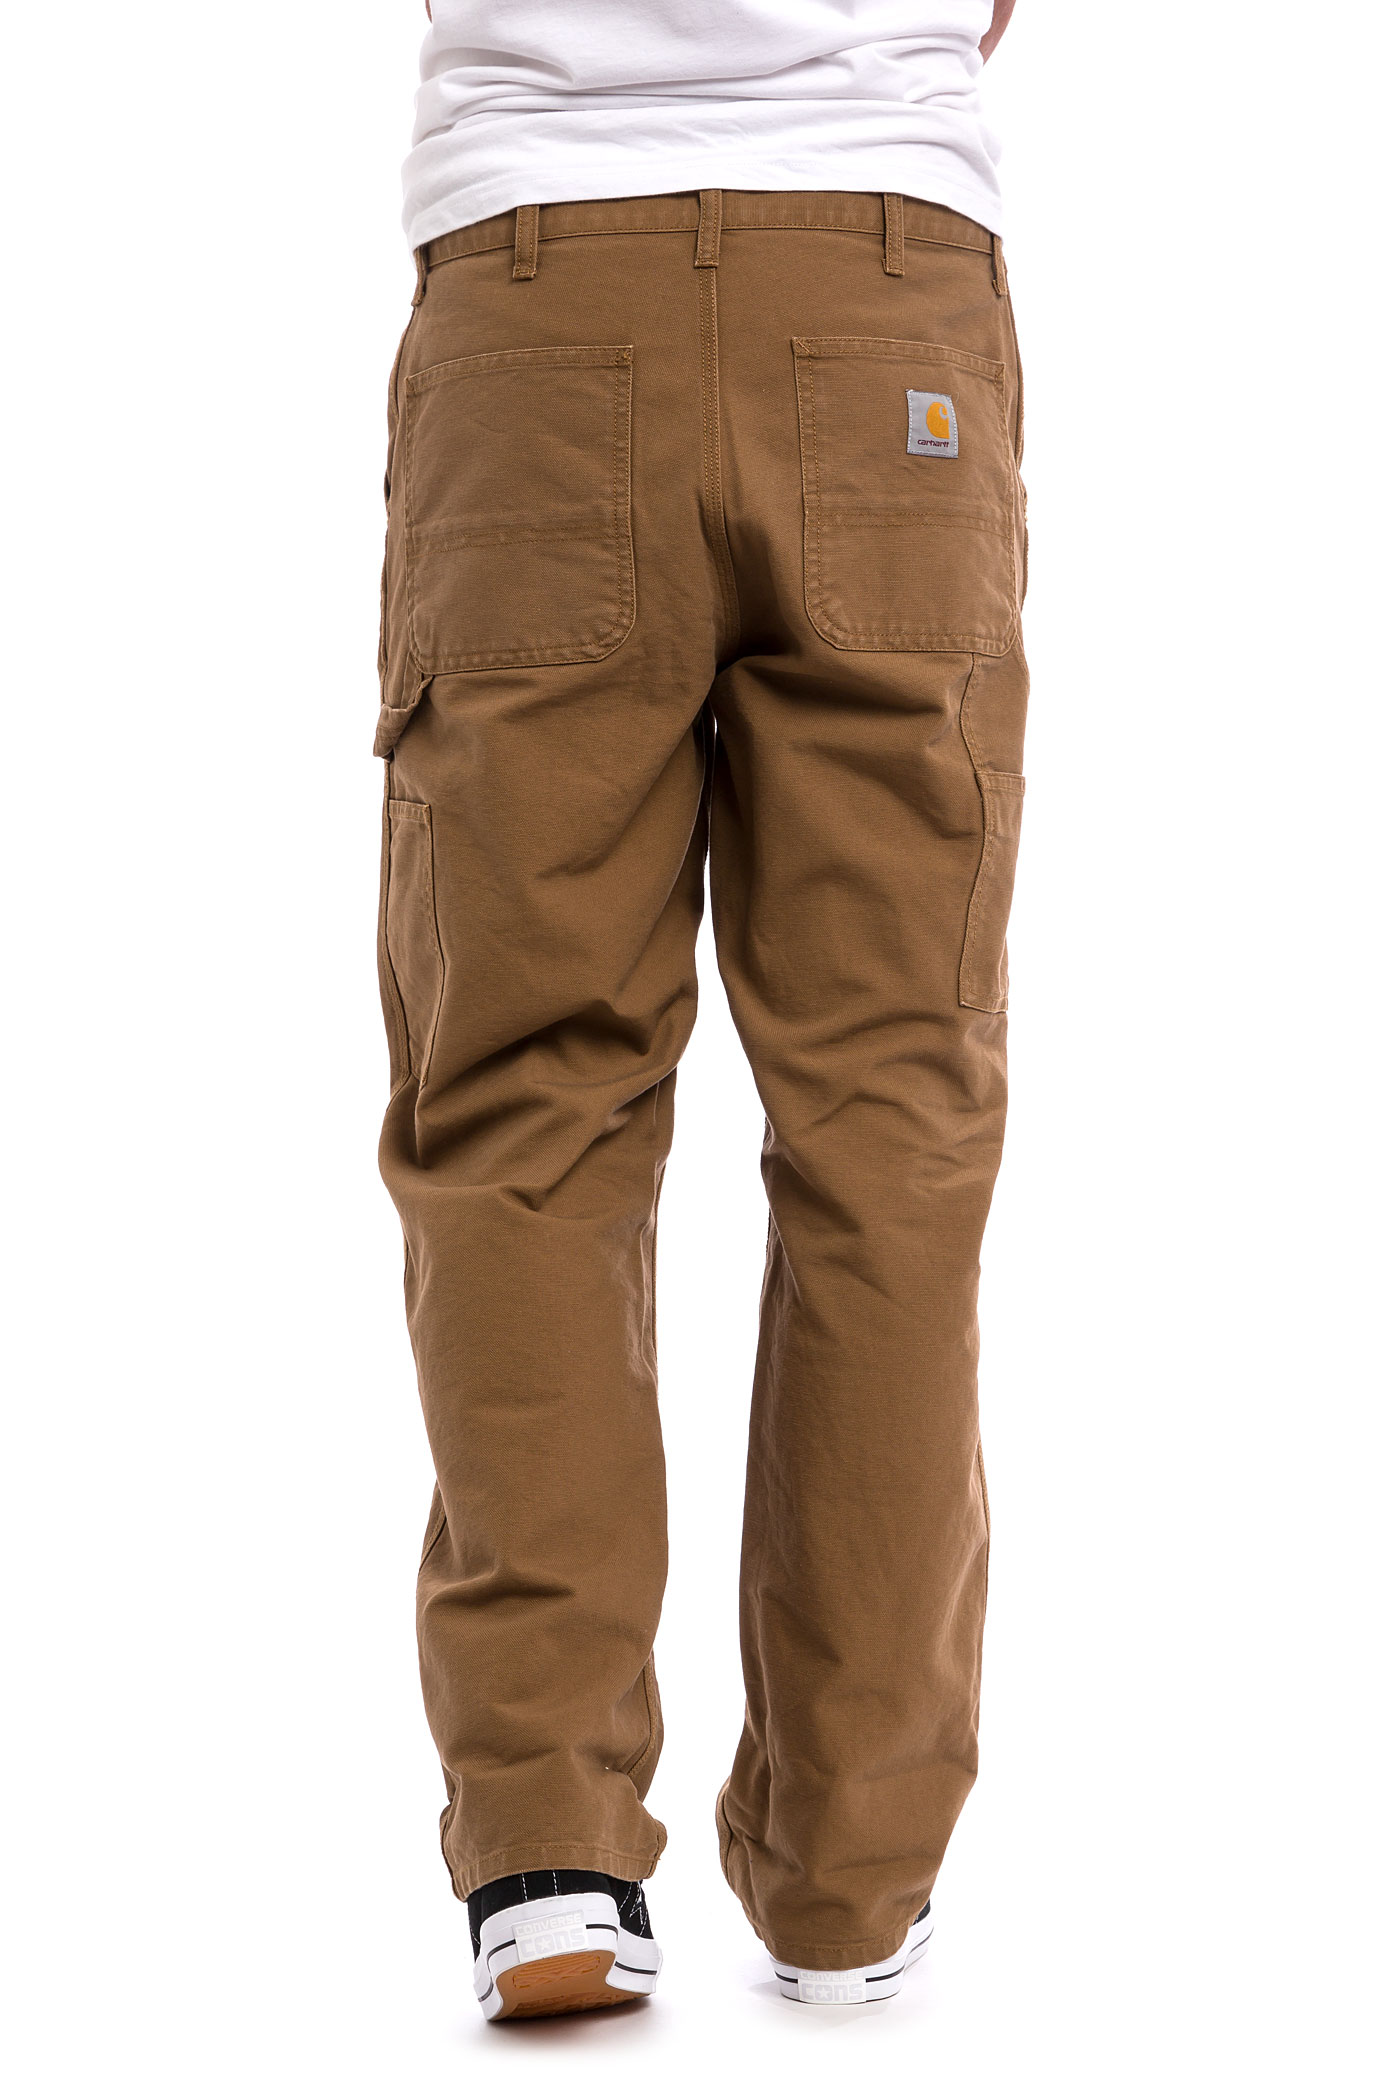 Carhartt WIP Single Knee Pant Turner Pants (hamilton brown rinsed) buy